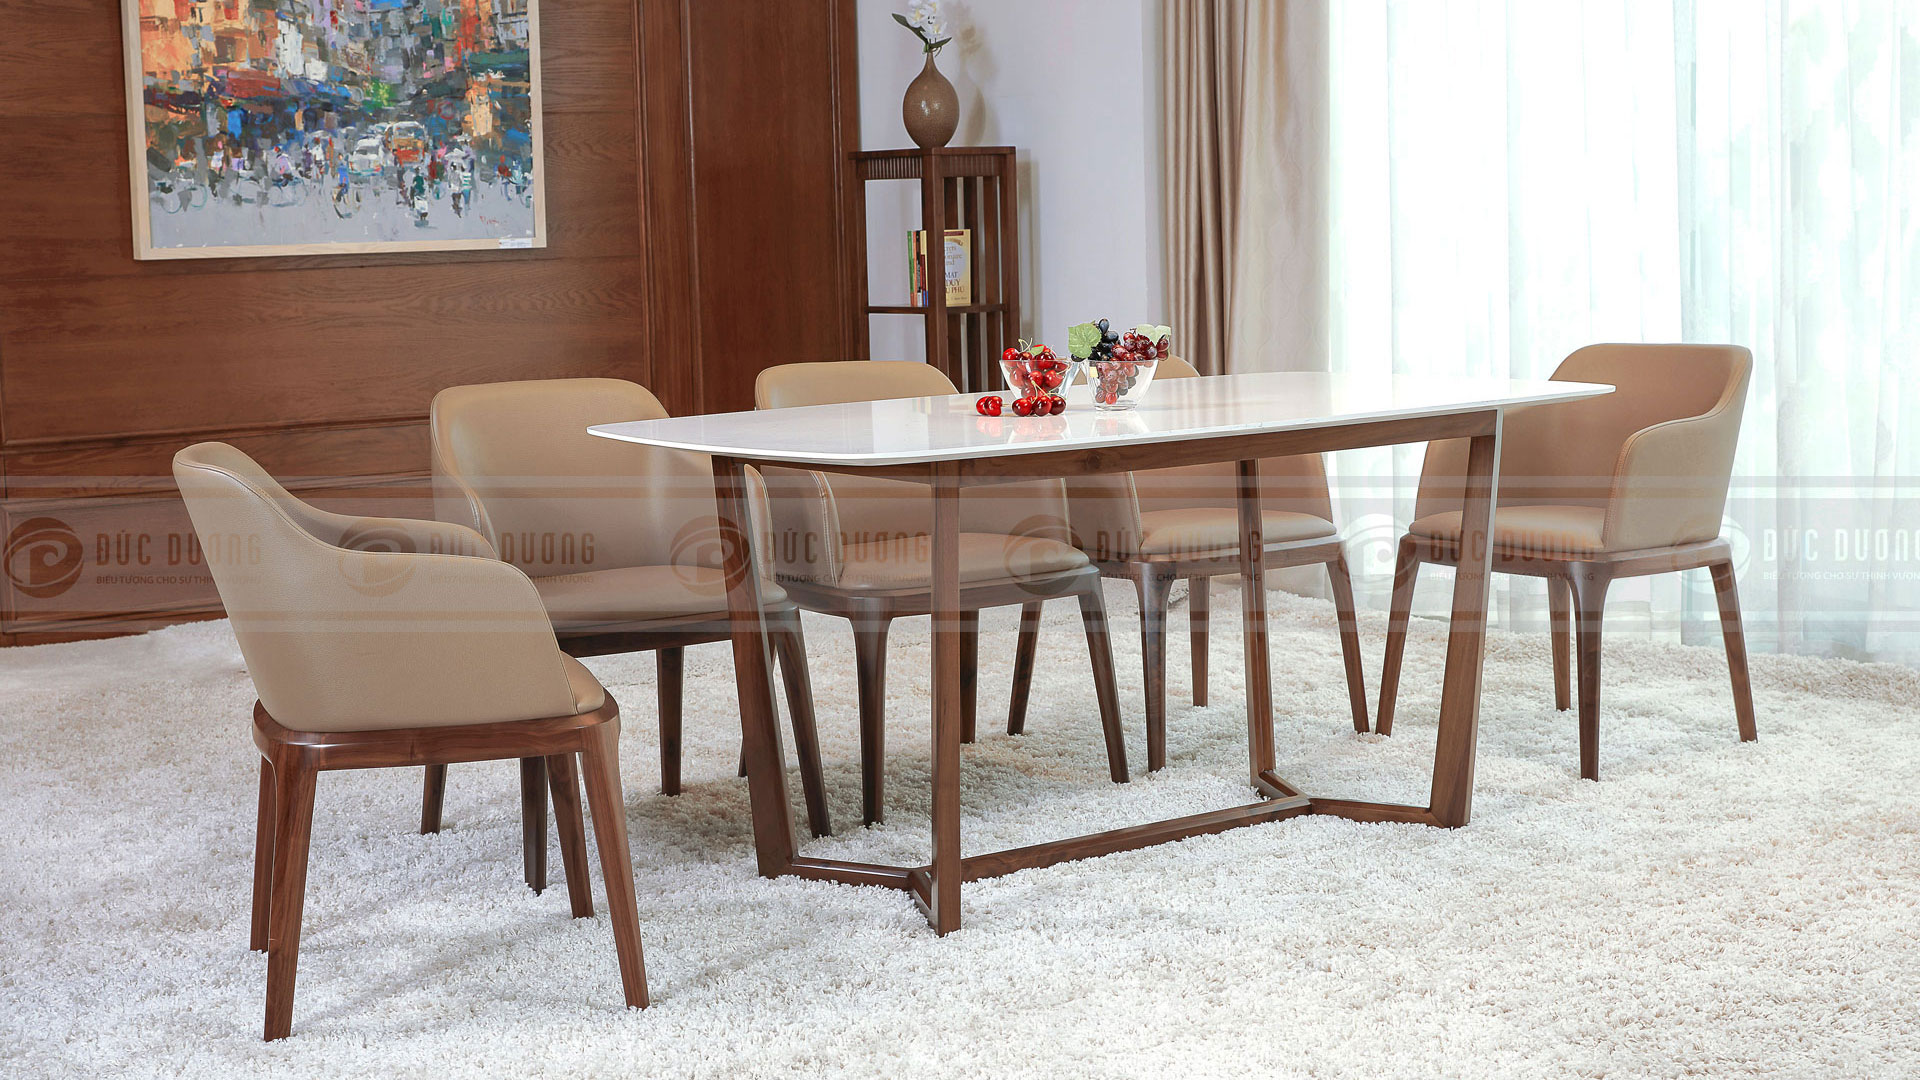 Mẫu bàn ăn 4 ghế đẹp phong cách hiện đại